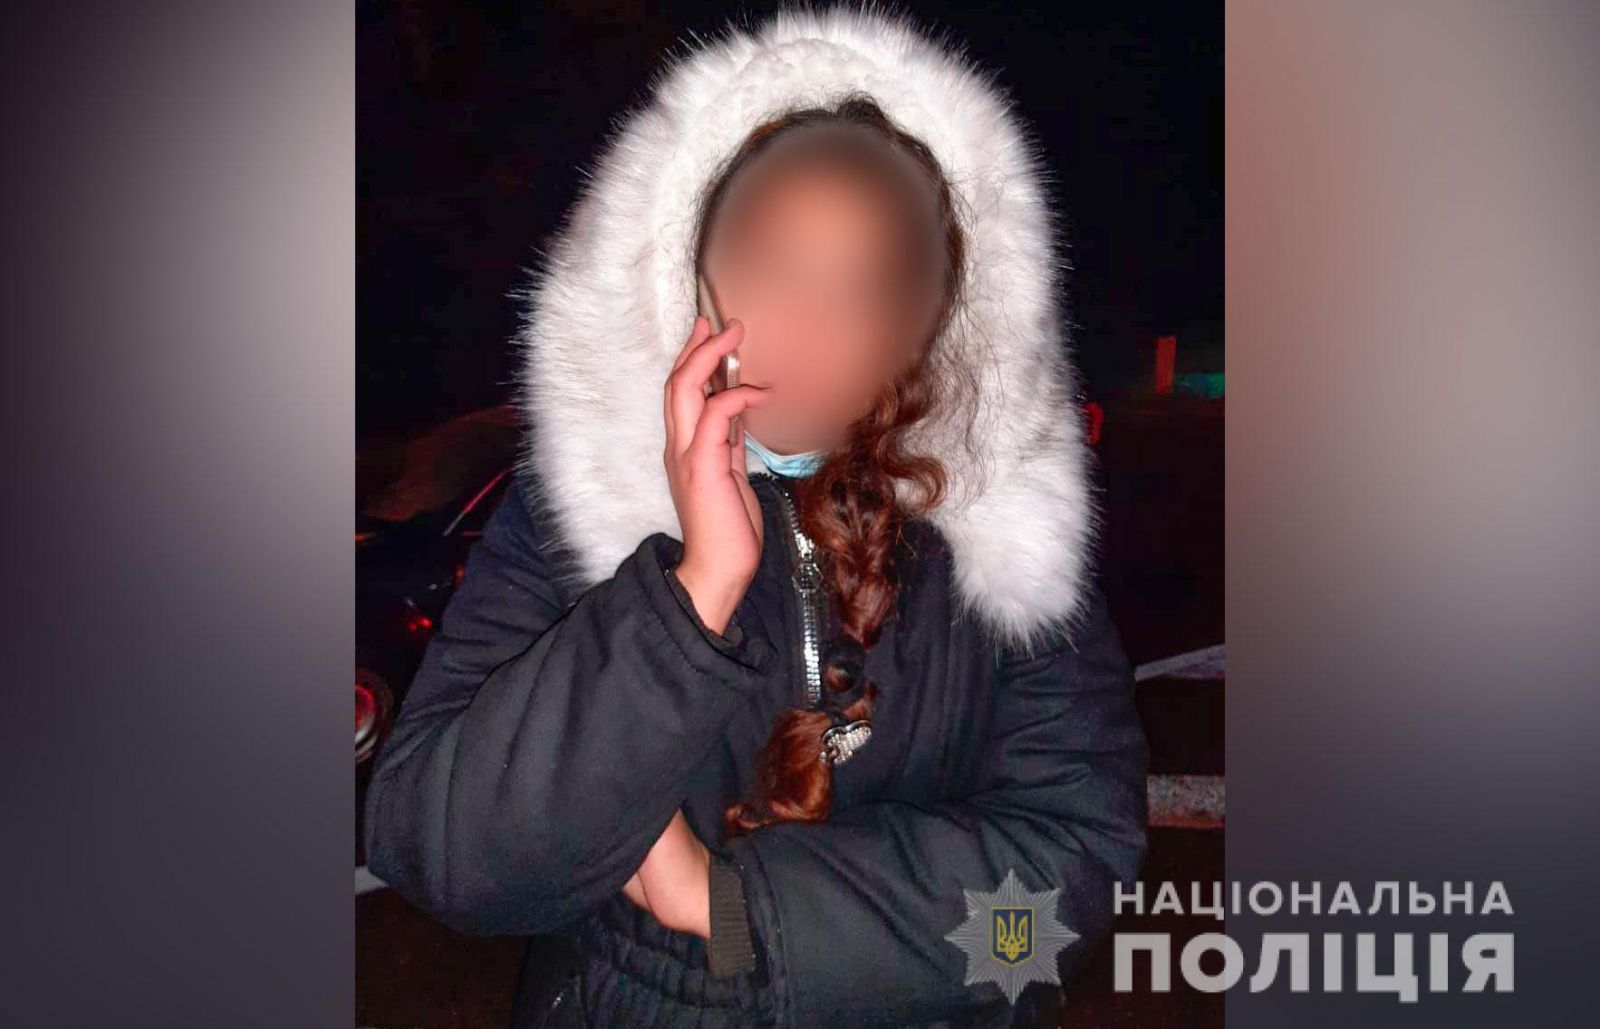 Из-за влюбленности в россиянина. 18-летняя девушка инсценировала свое похищение и пыталась перейти границу